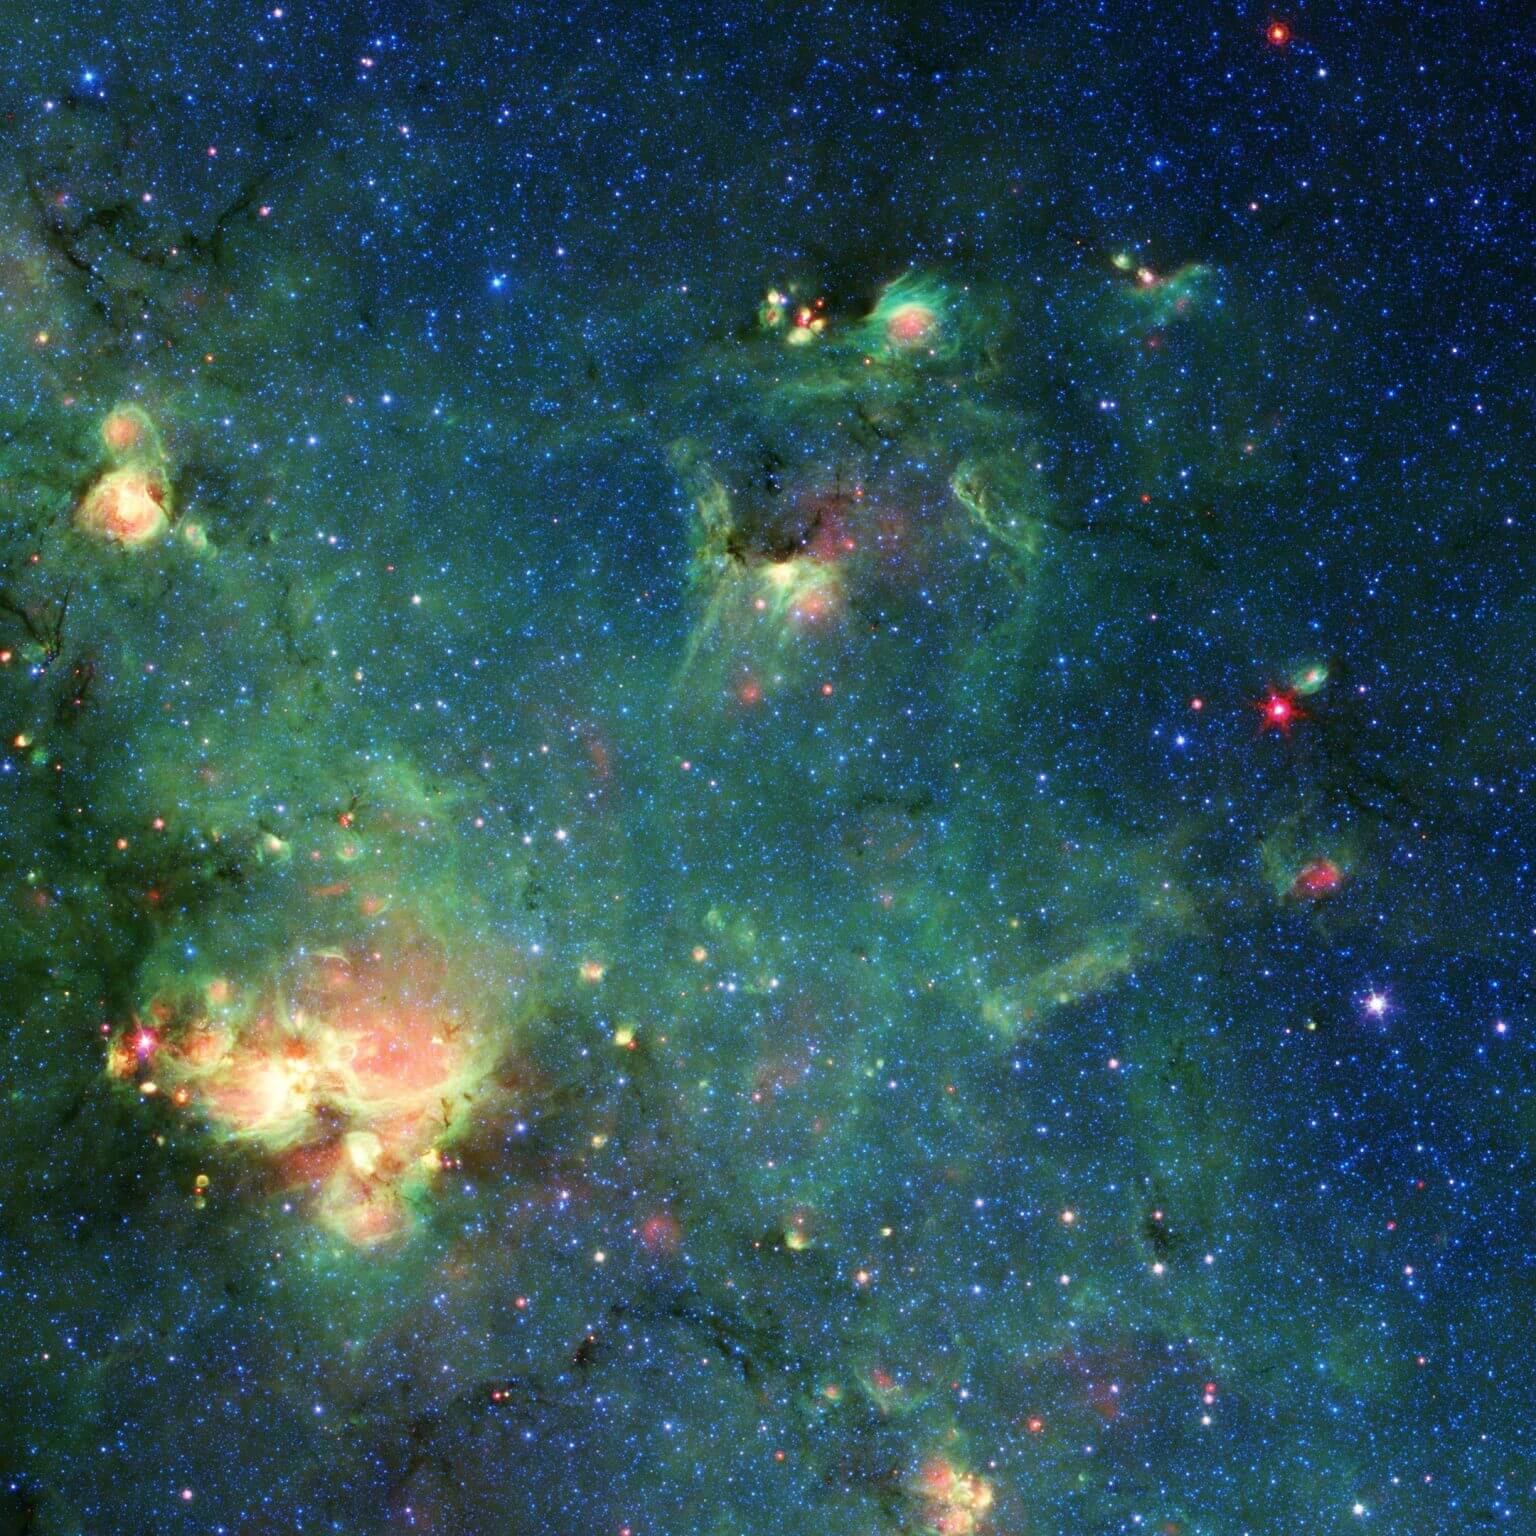 טלסקופ החלל ספיצר של נאס"א צילם את ענן הגז והאבק הזה. הצבעים מייצגים אורכי גל שונים של אור אינפרה אדום ויכולים לחשוף תכונות כמו מקומות שבהם קרינה מכוכבים חיממה את החומר שמסביב. כל דמיון לגודזילה הוא אך ורק מדומיין. קרדיט: NASA/JPL-Caltech